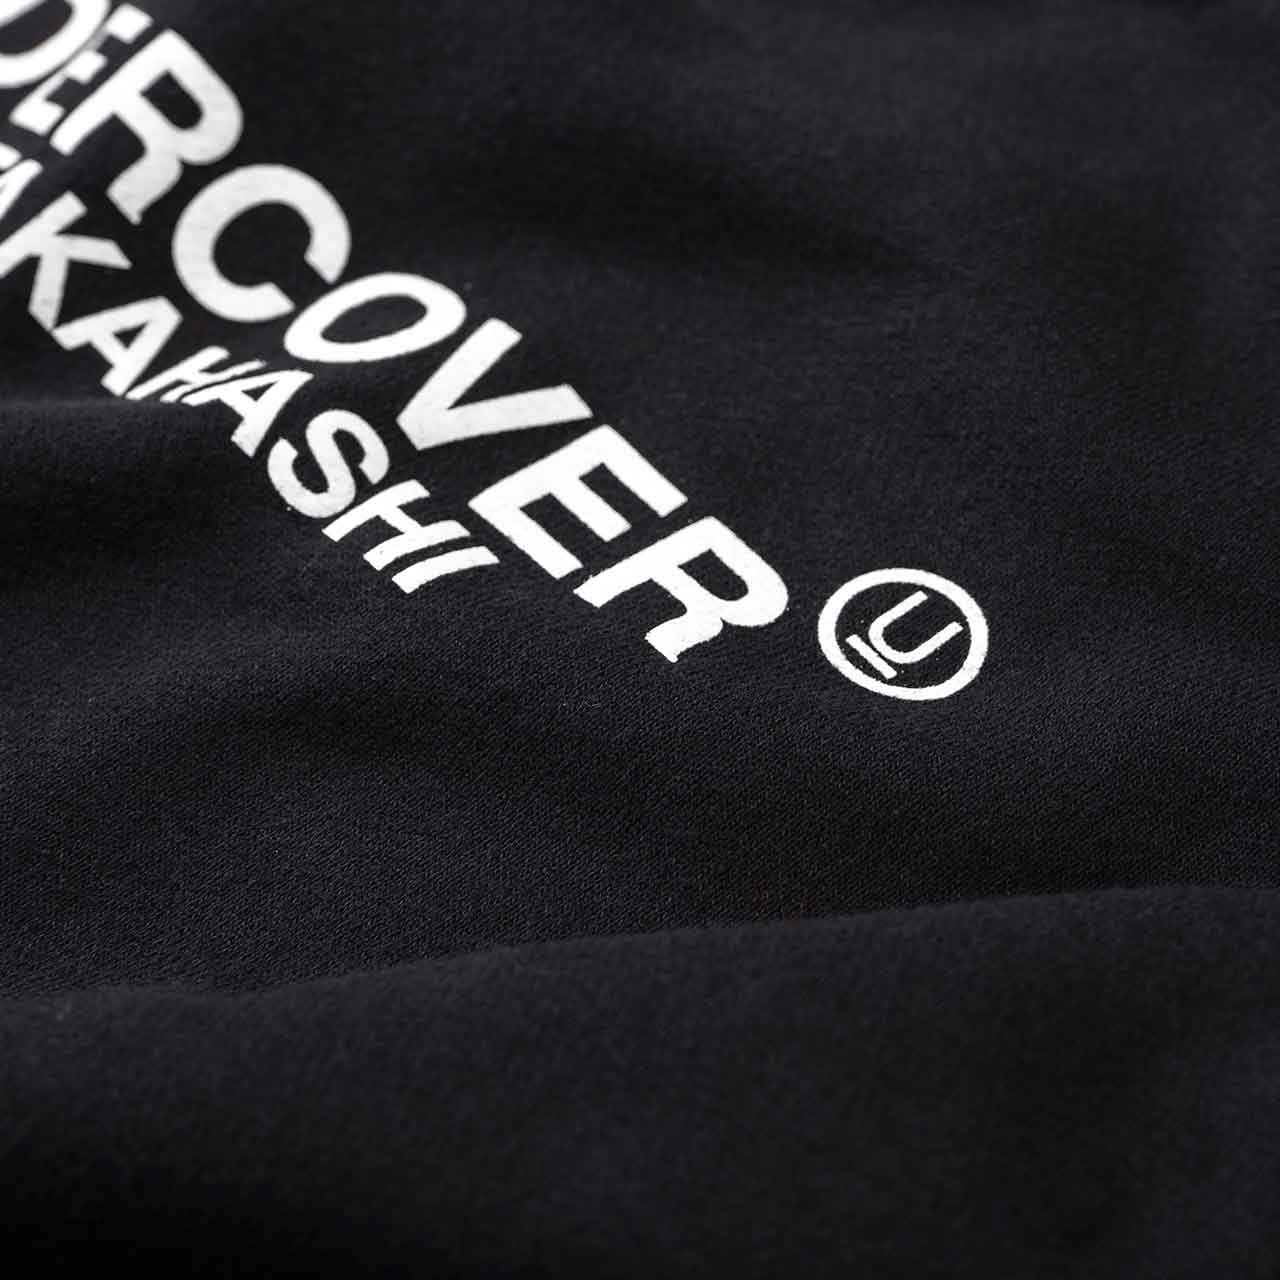 undercover undercover fallen man sweatshirt (black)